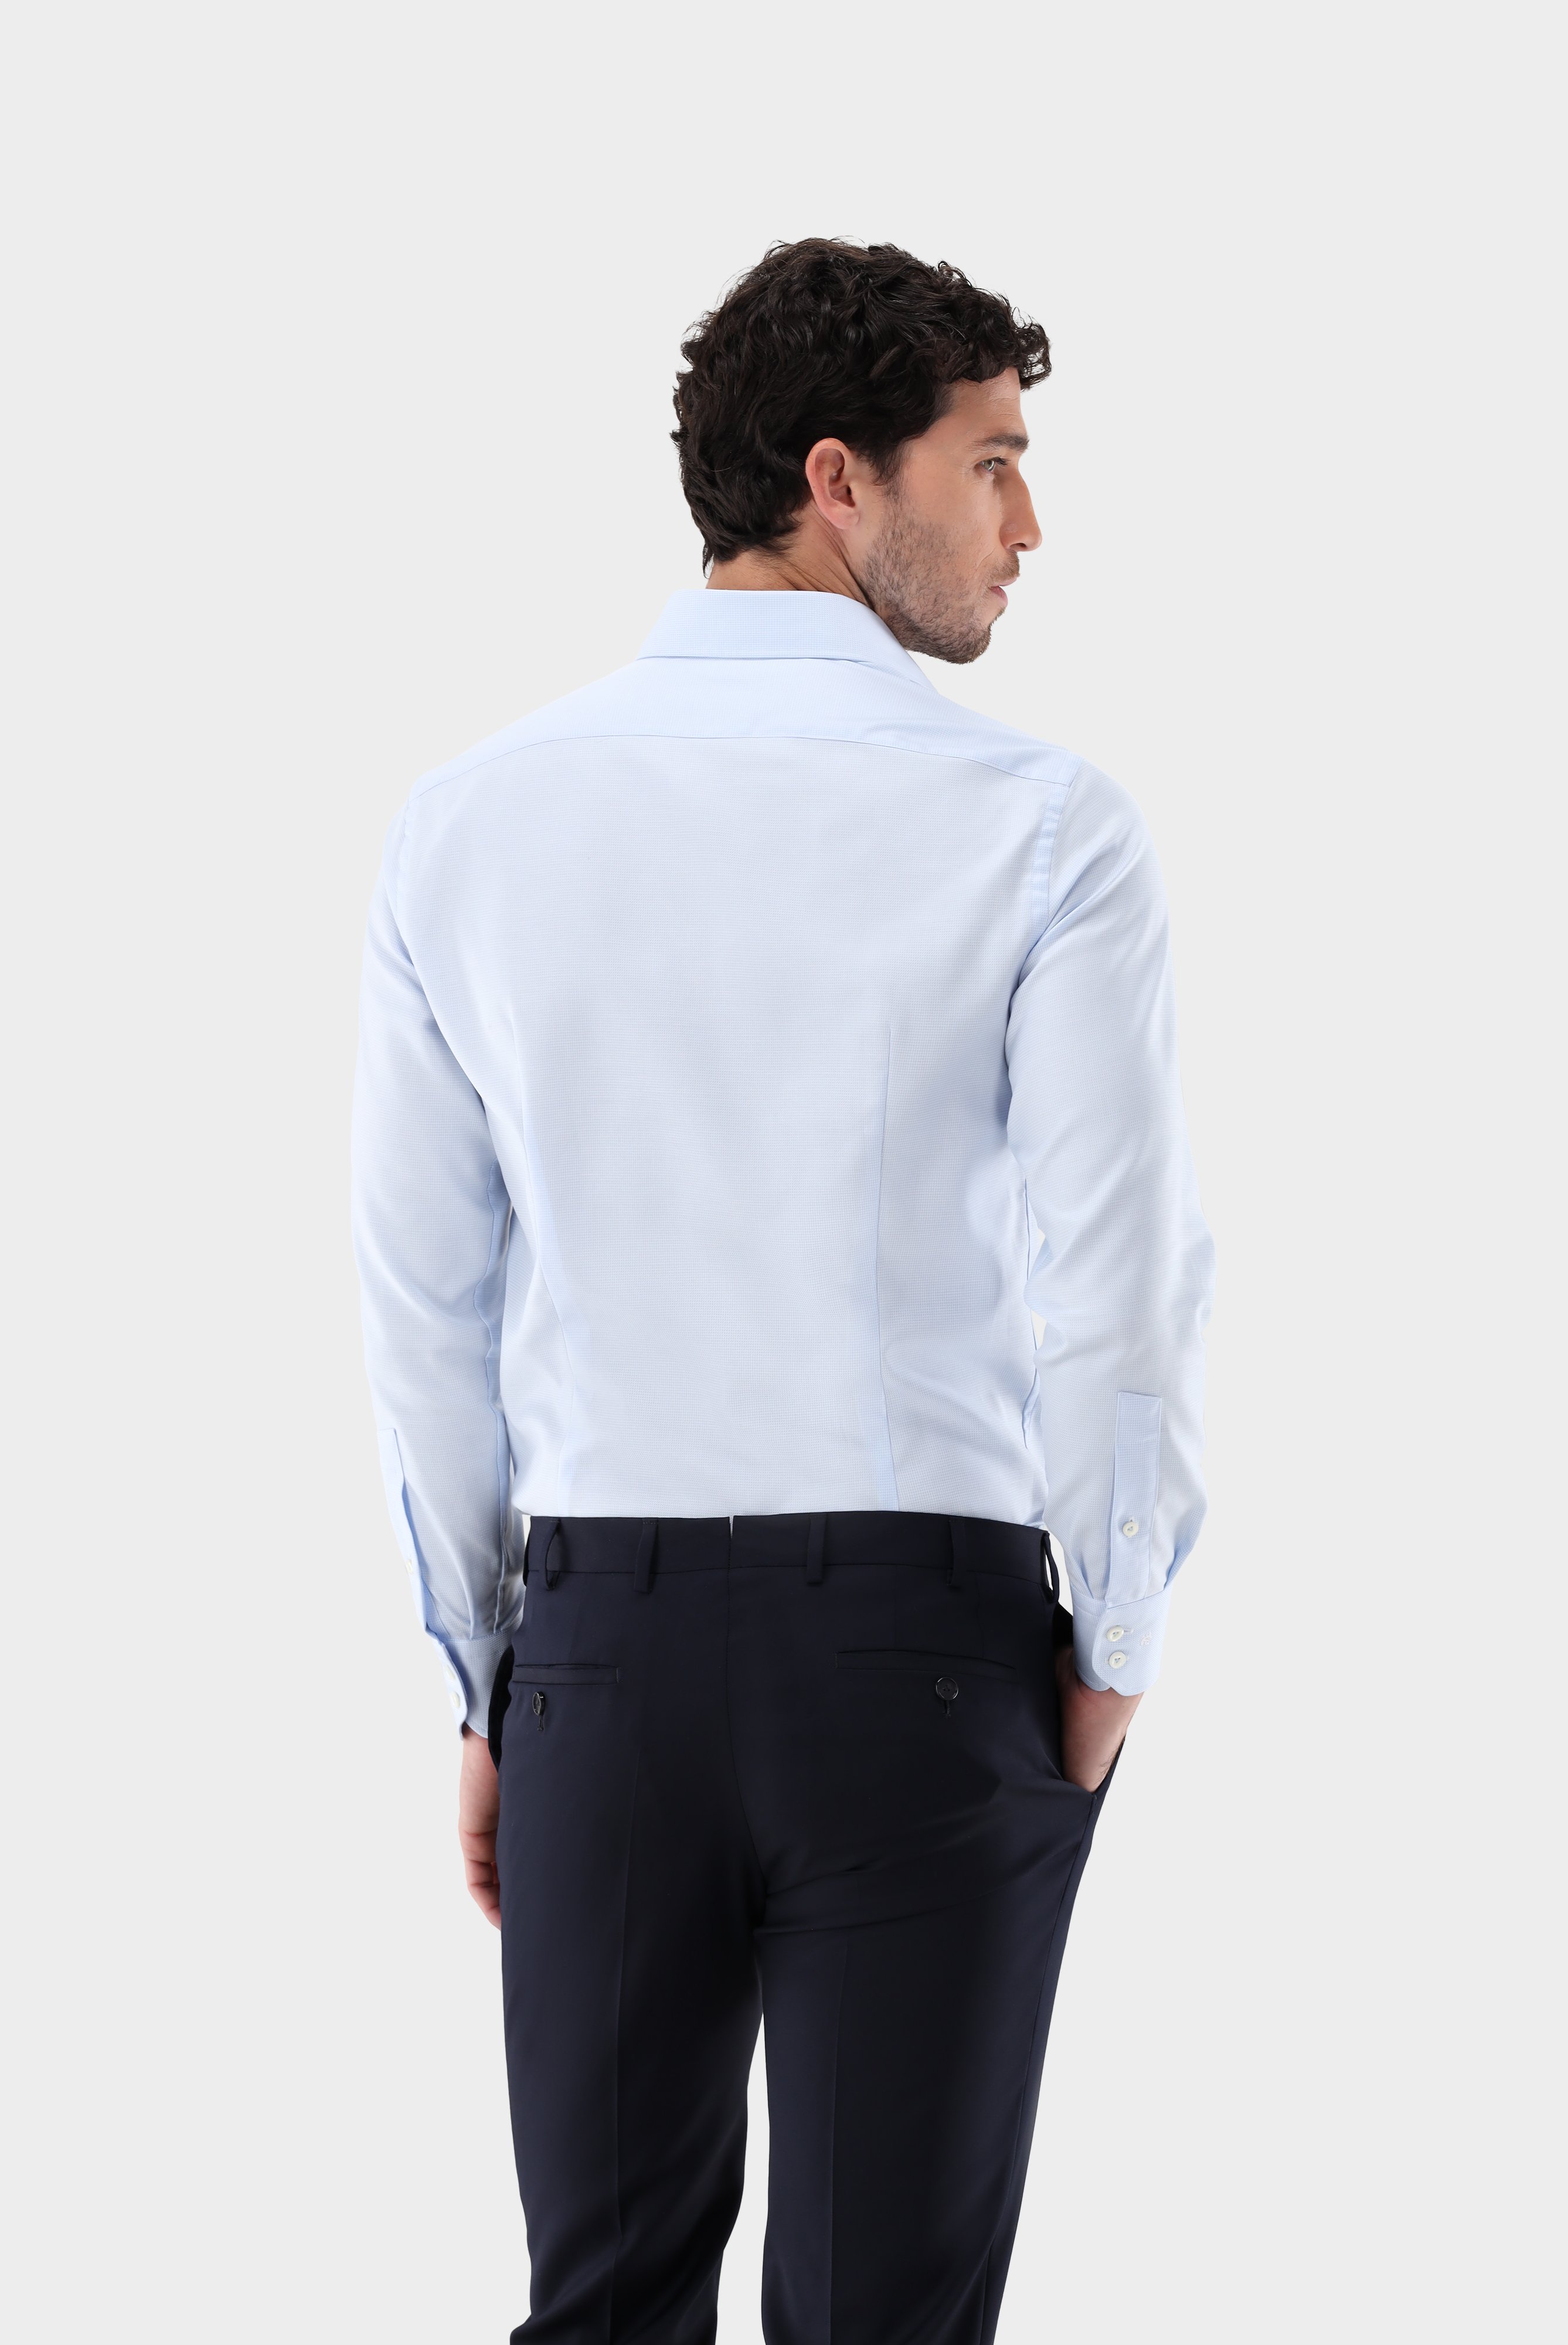 Business Hemden+Twill Hemd mit Struktur Tailor Fit+20.2020.AV.161265.710.44